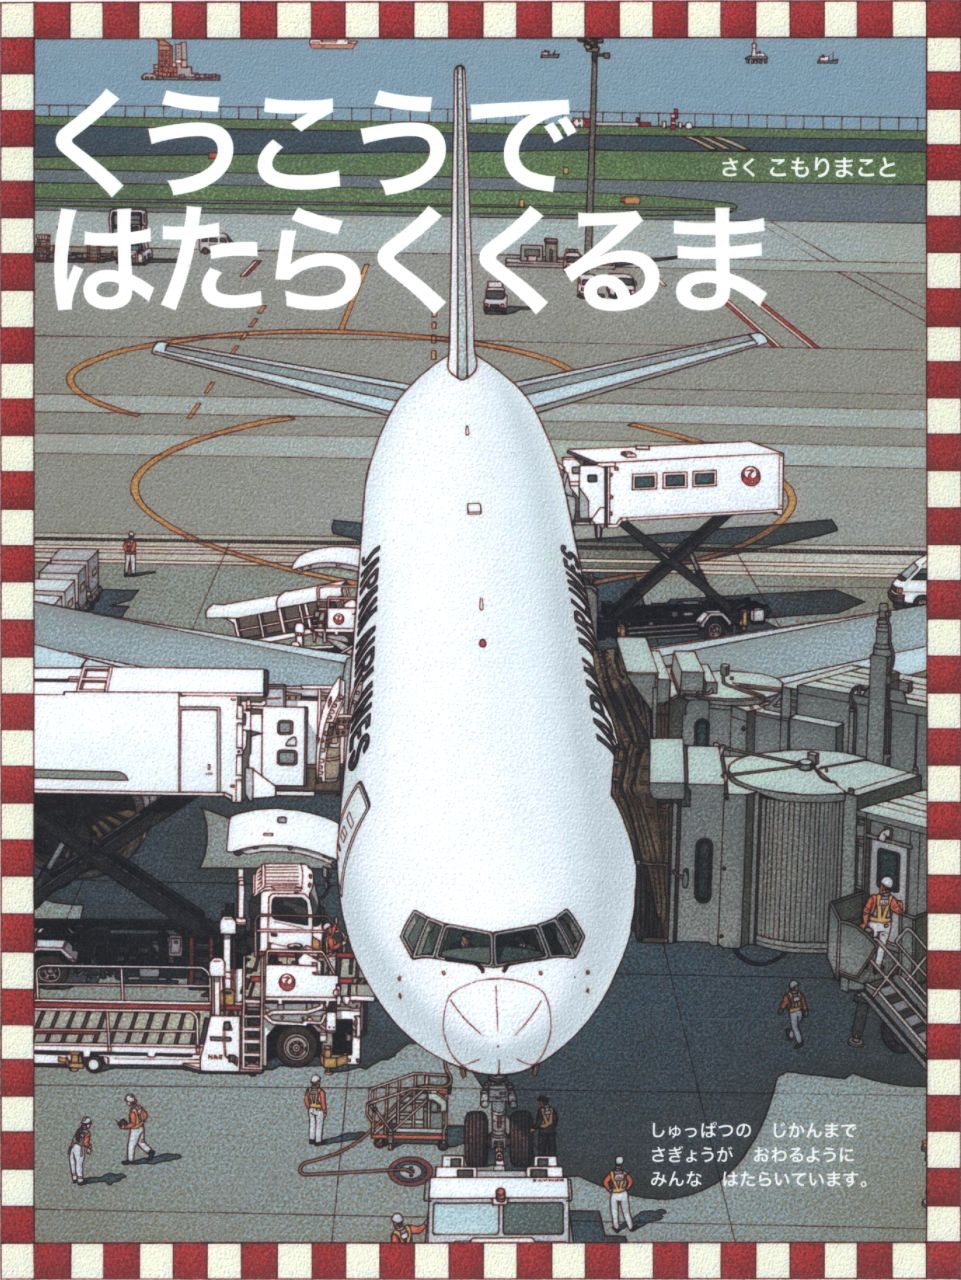 http://airman.jp/archives/2013/03/24/hataraku_kuruma.jpg